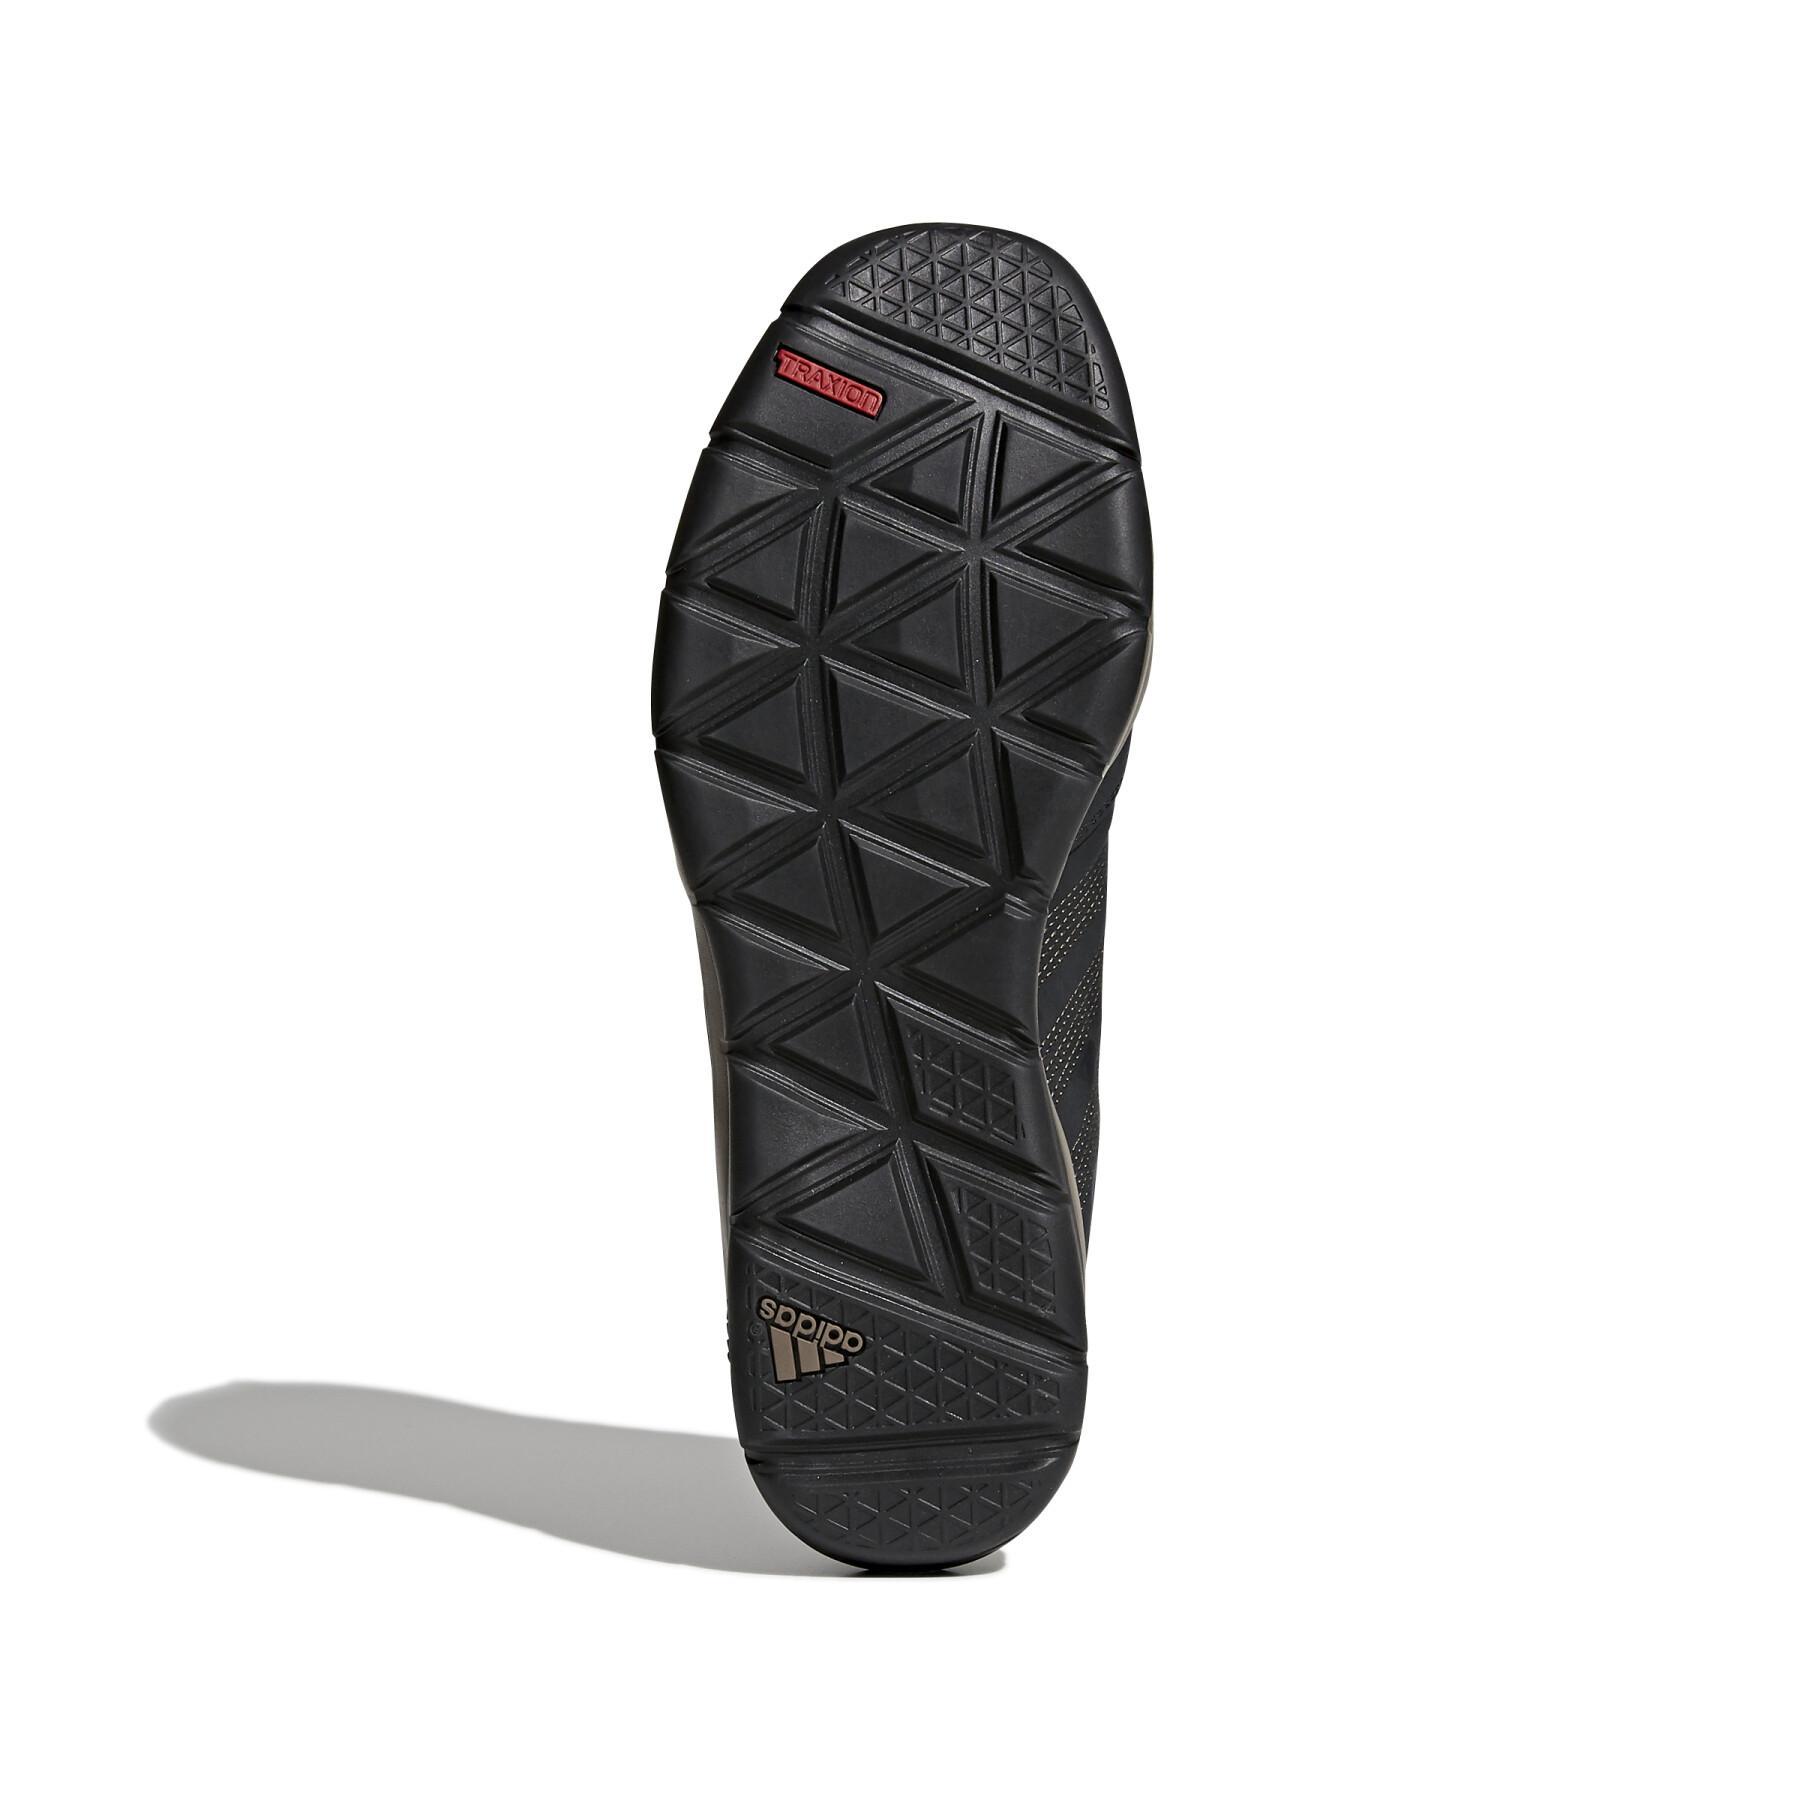 Zapatillas de senderismo adidas Anzit DLX